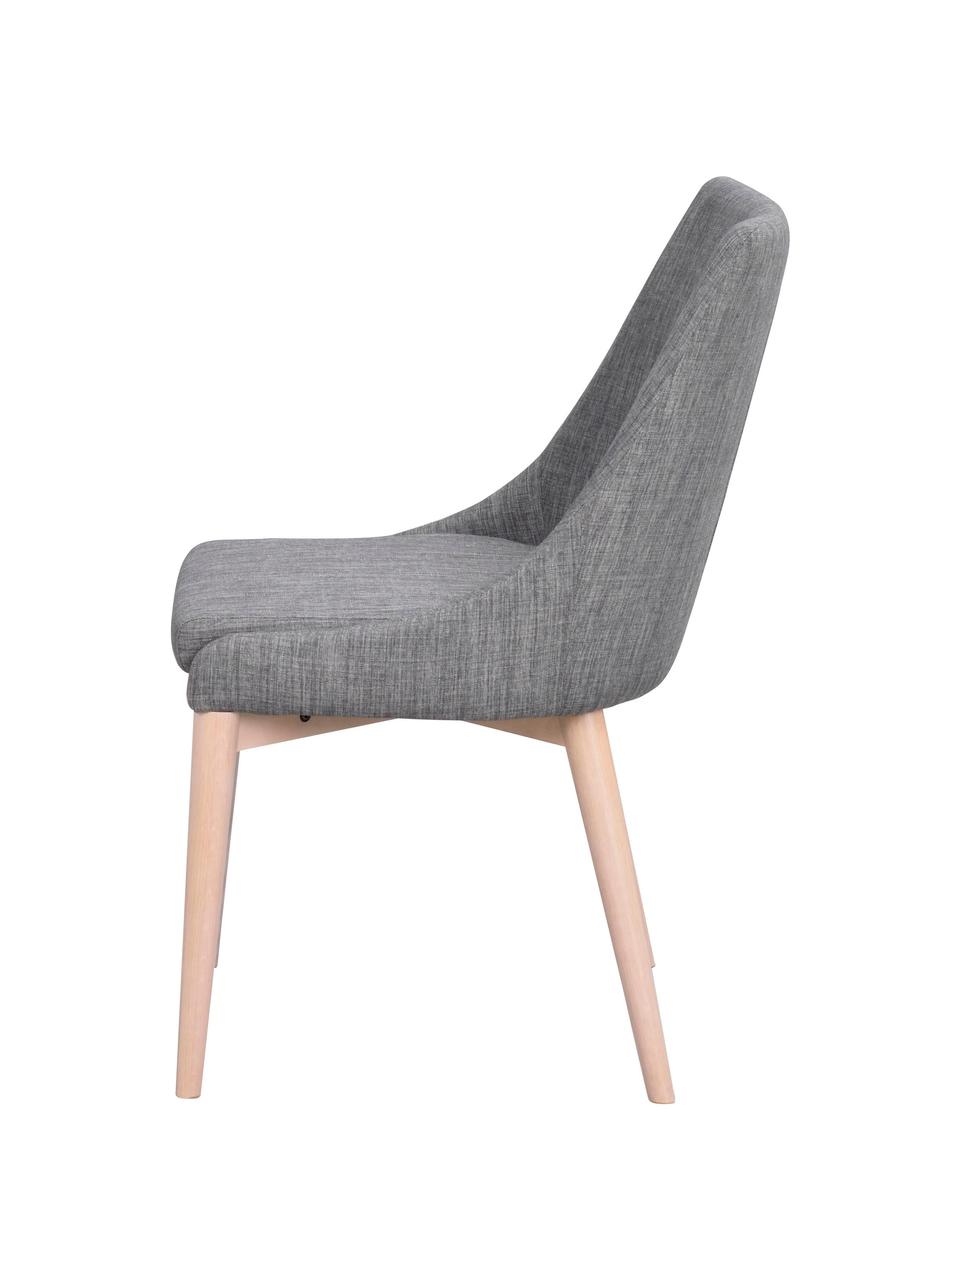 Scandi-gestoffeerde stoel Bea in grijs, Bekleding: 100% polyester, Frame: metaal, multiplex, Poten: eikenhout, massief, Donkergrijs, eikenhoutkleurig, 51 x 61 cm